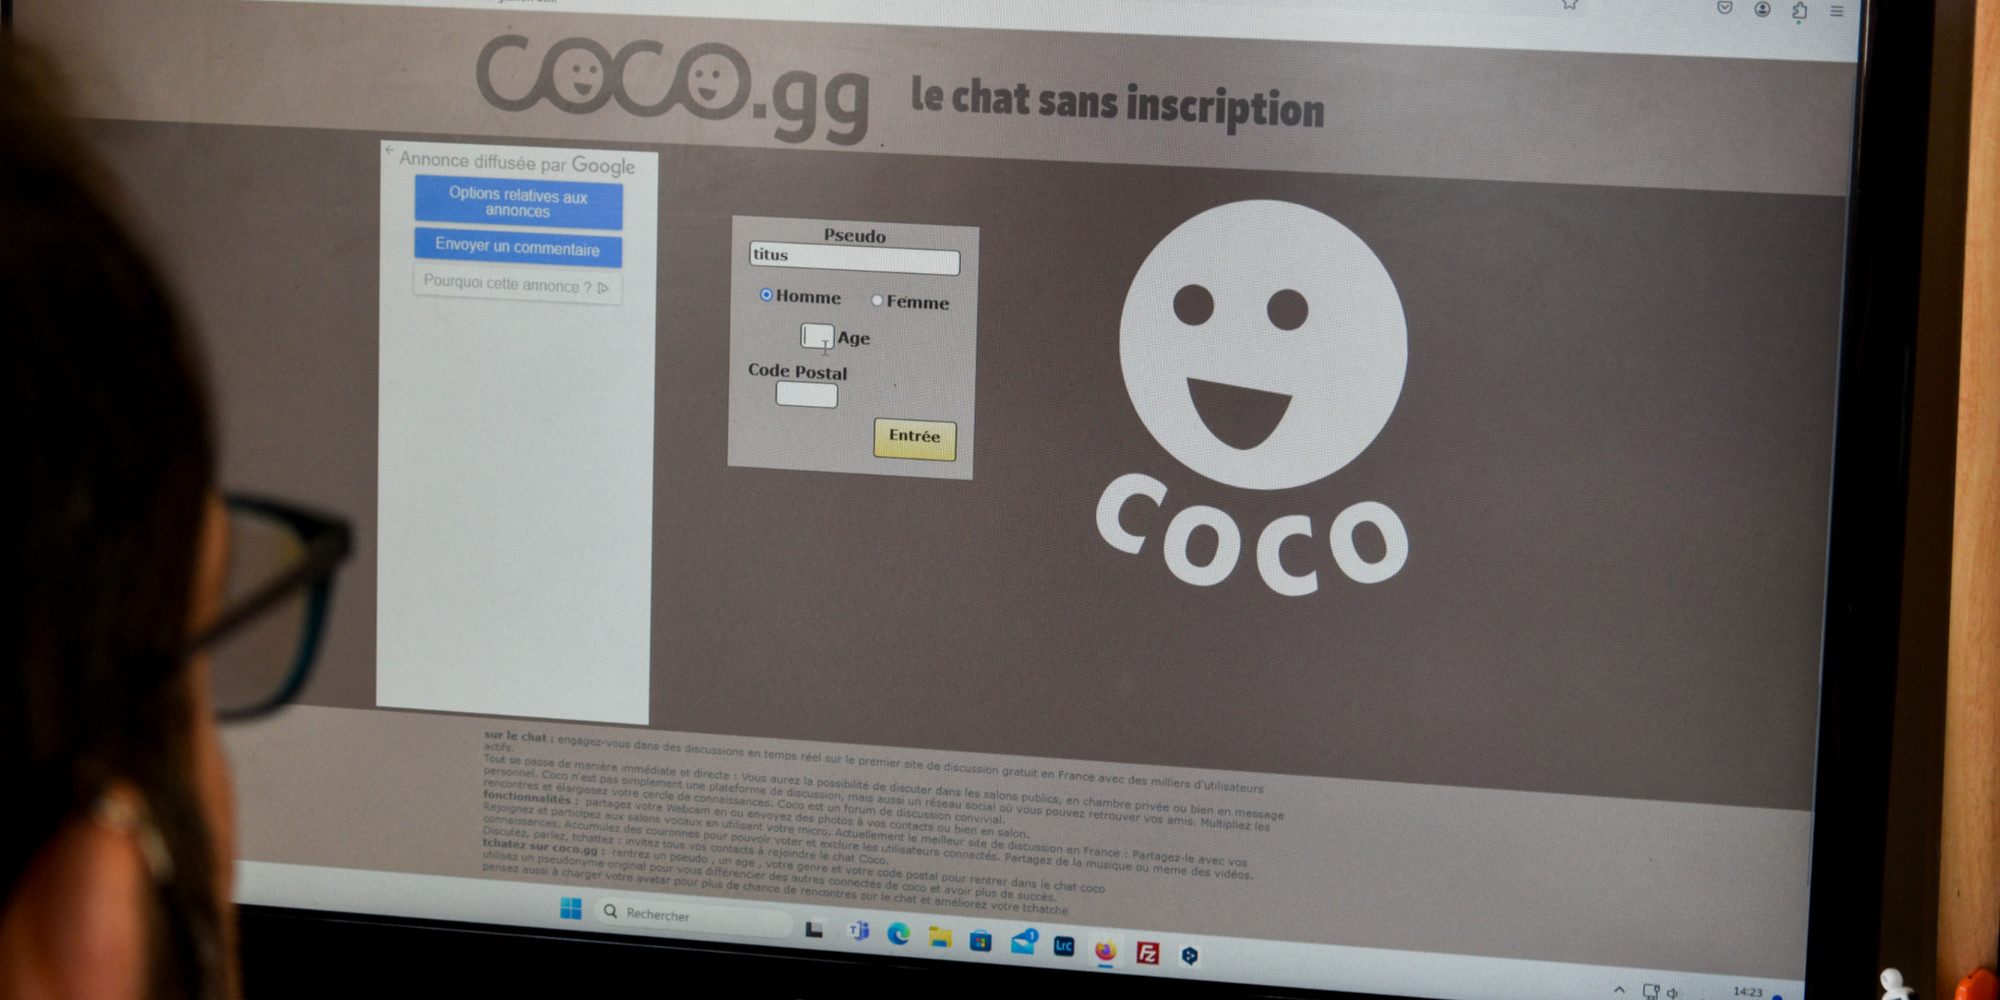 mort de philippe coopman : qu’est-ce que le site coco.gg, sur lequel se serait fait piéger le jeune homme ?